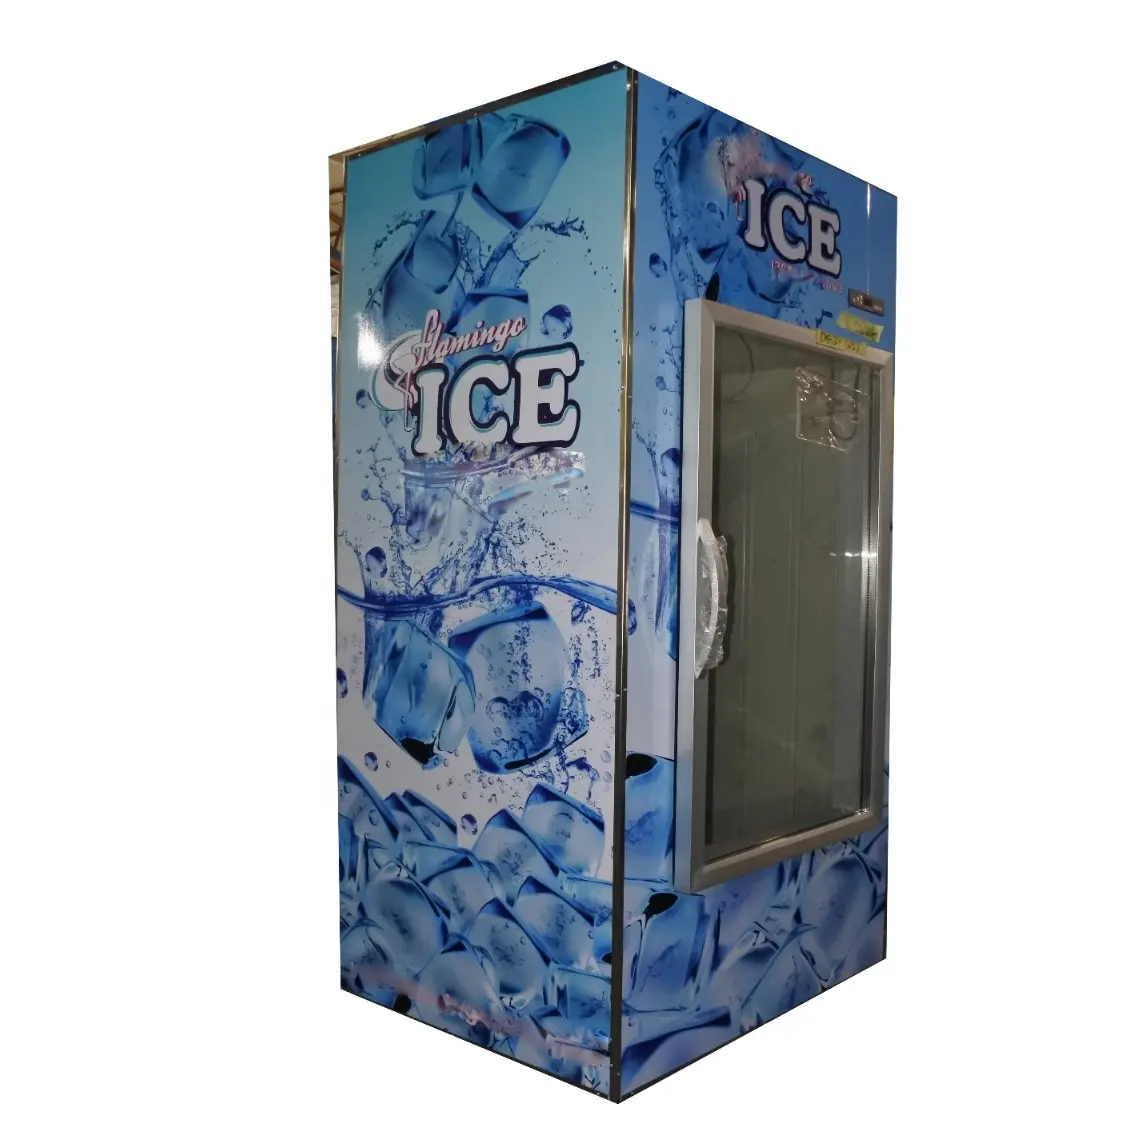 Pantalla de cristal interior para estación de Gas, Enfriador de hielo de acero inoxidable, 1 ud.